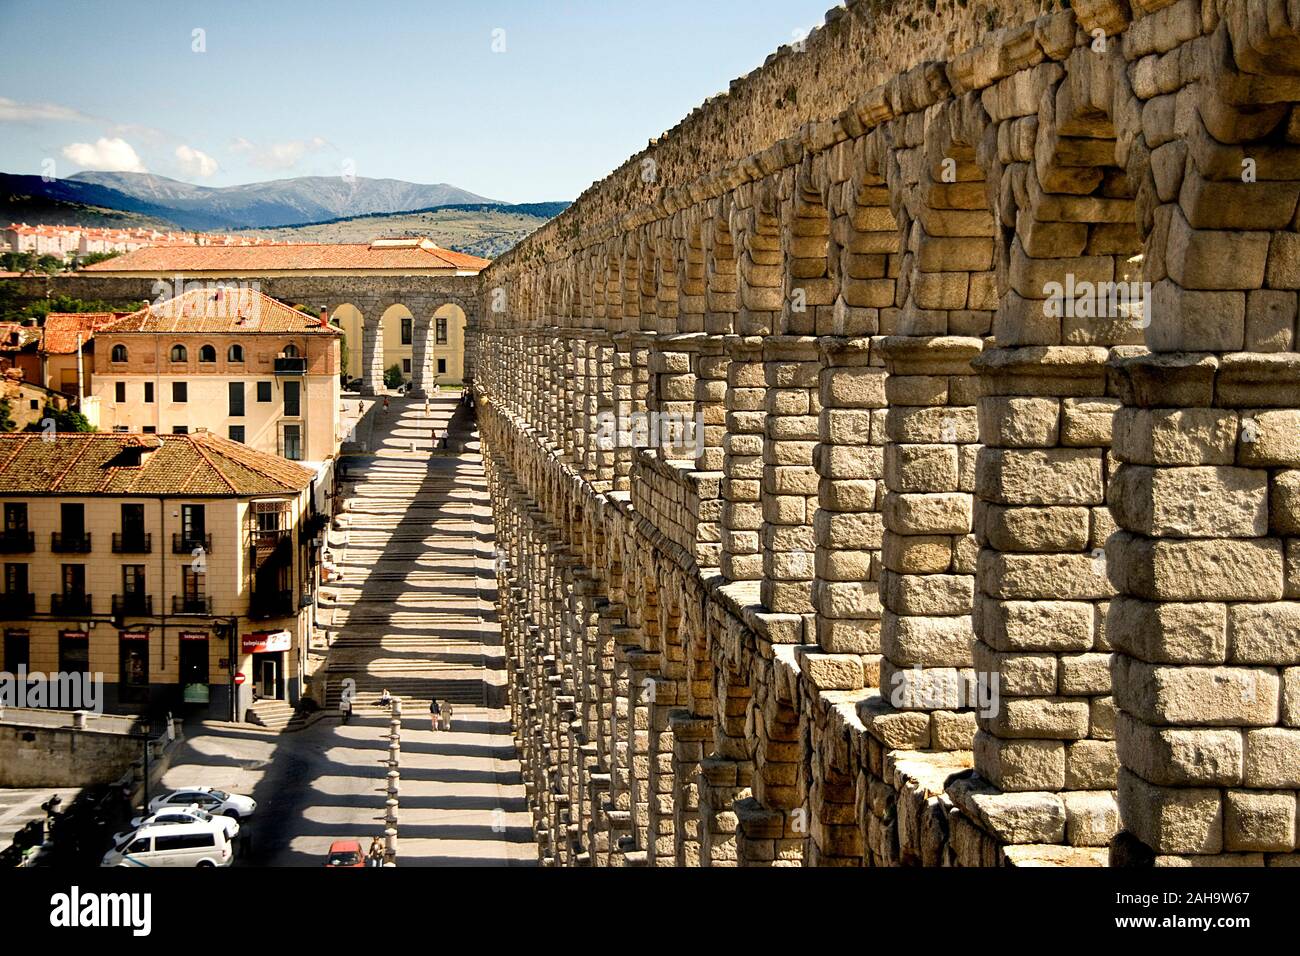 Ancient Roman aqueduct in Segovia, Spain Stock Photo